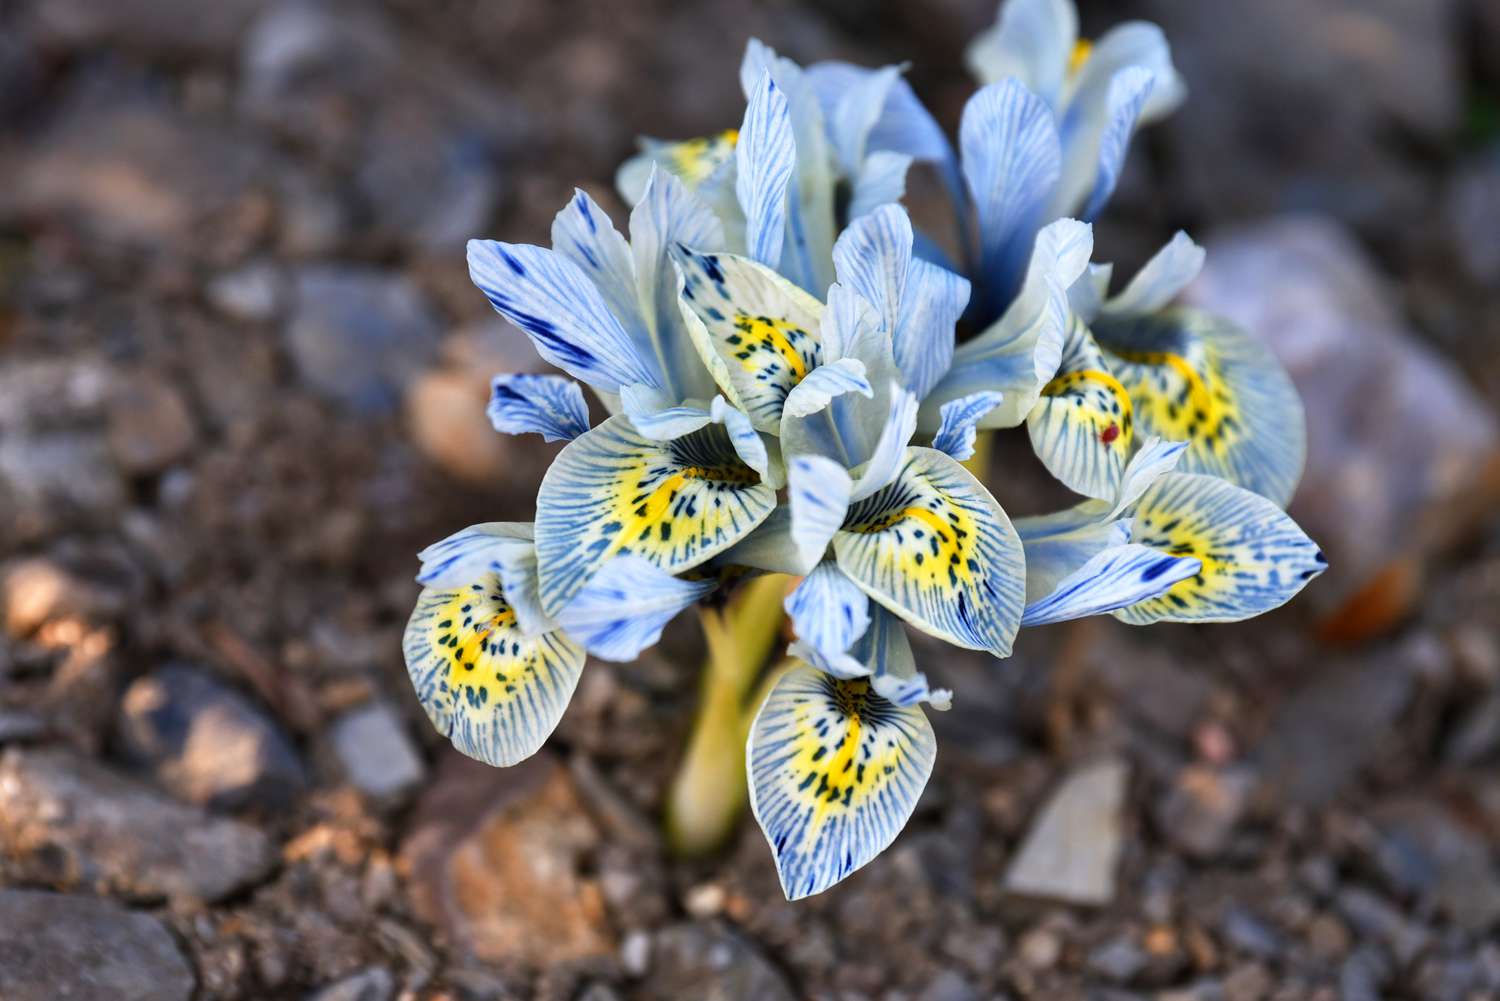 Genetzte Irispflanze mit blau-gelb gestreiften und gepunkteten Blütenbüscheln